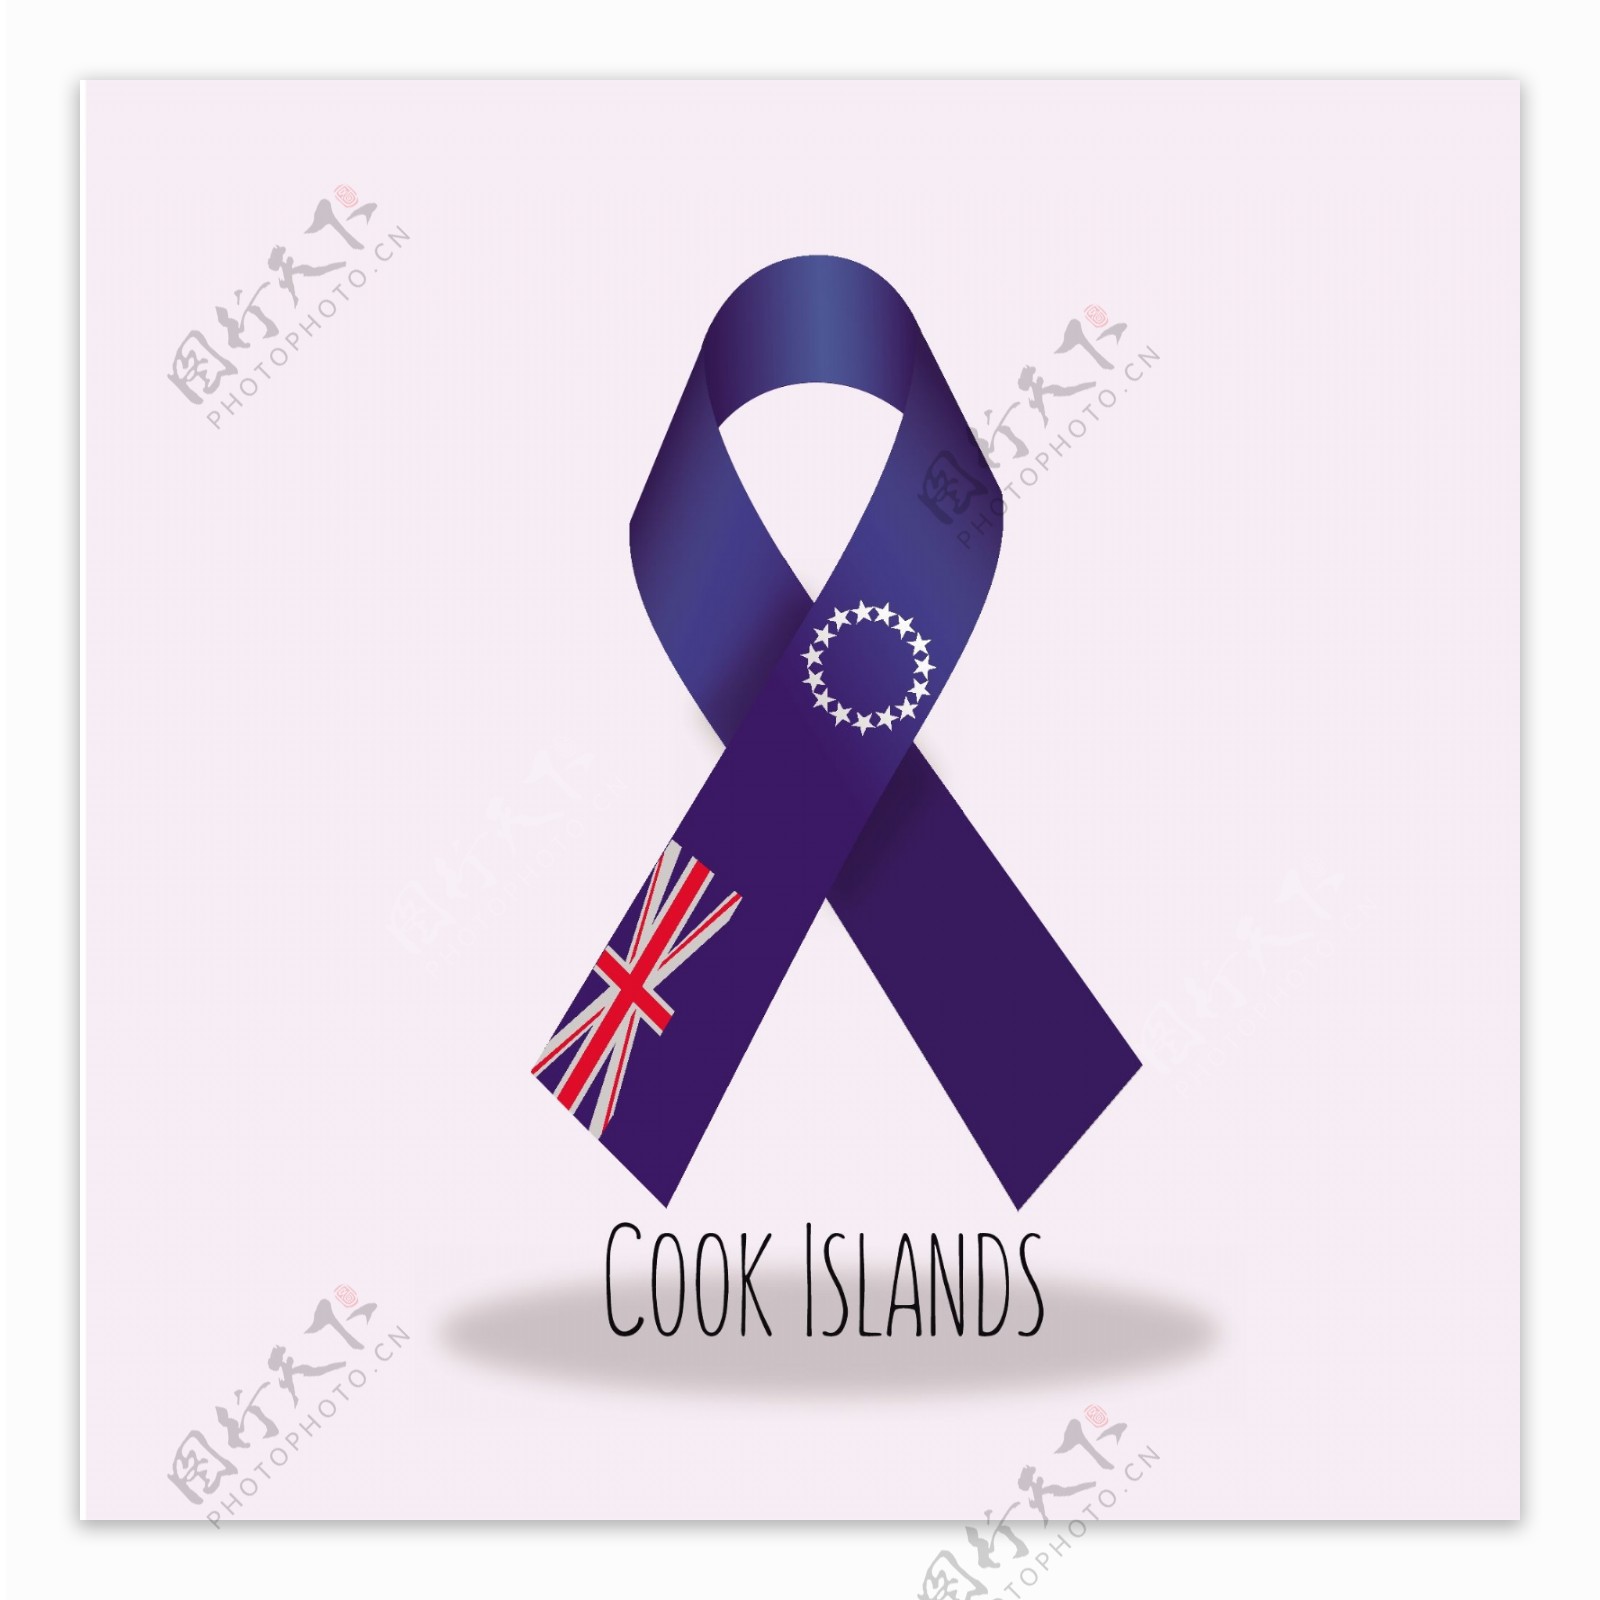 库克群岛国旗丝带设计矢量素材